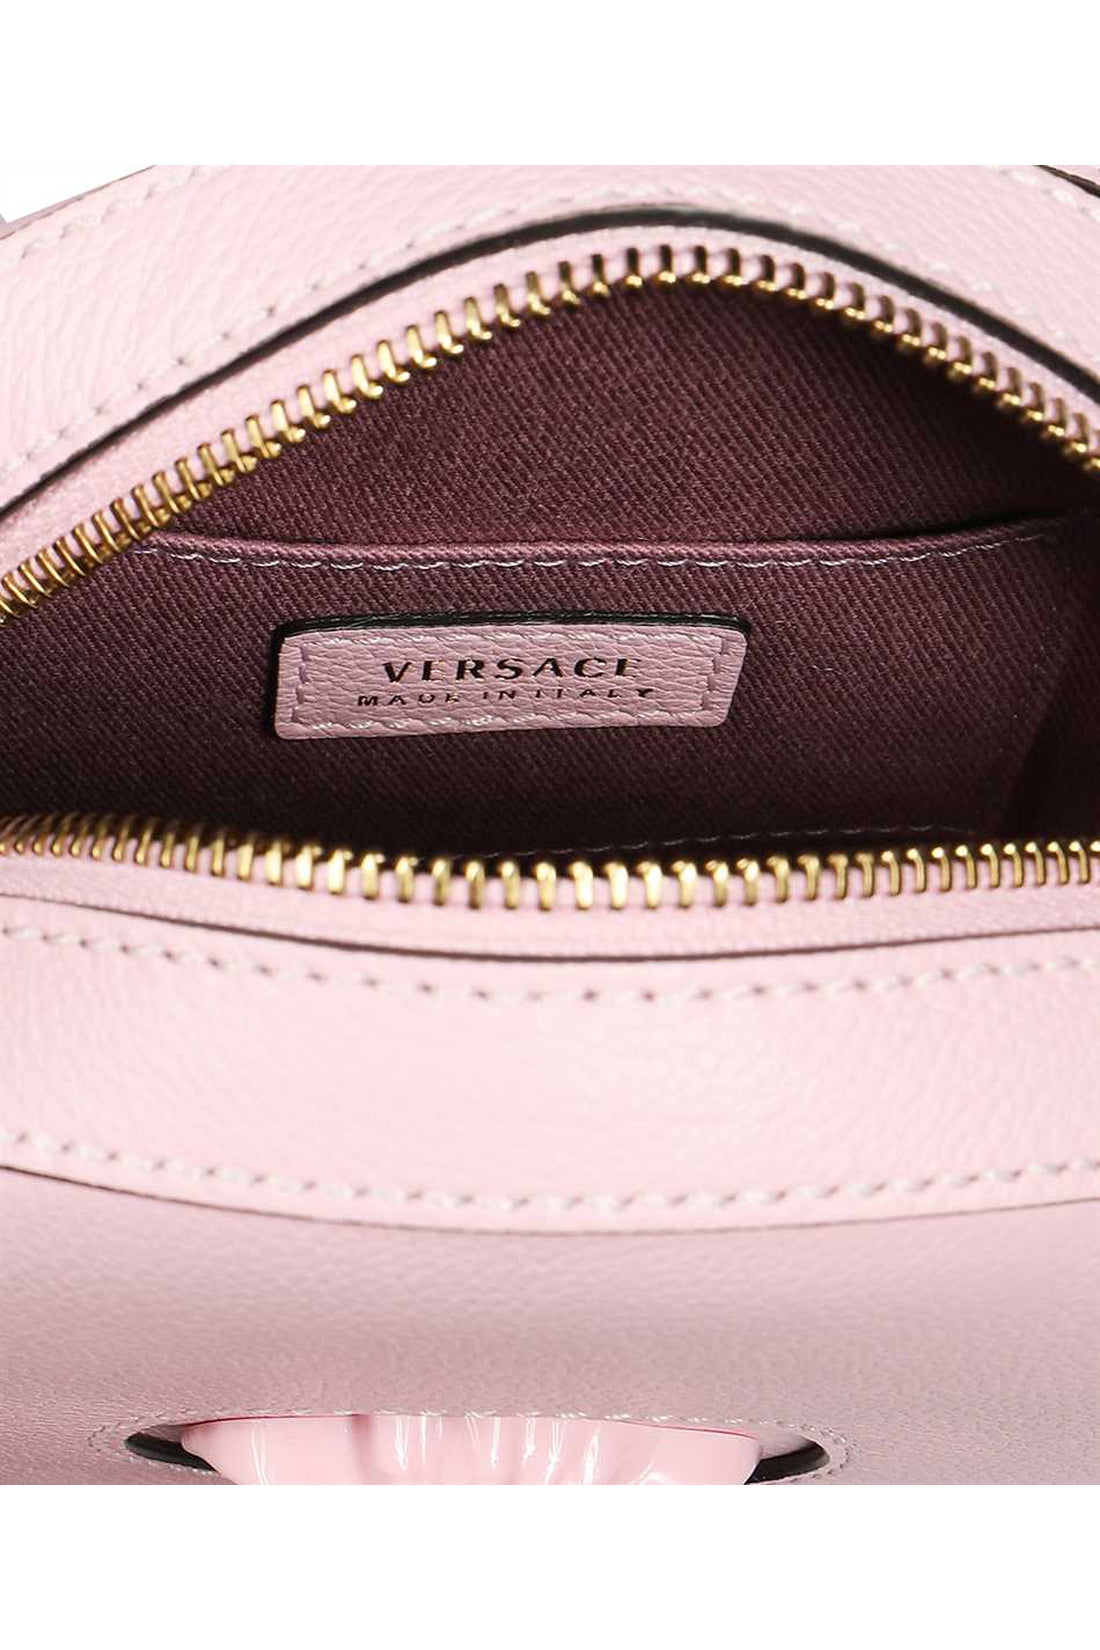 Versace-OUTLET-SALE-La Medusa leather camera bag-ARCHIVIST